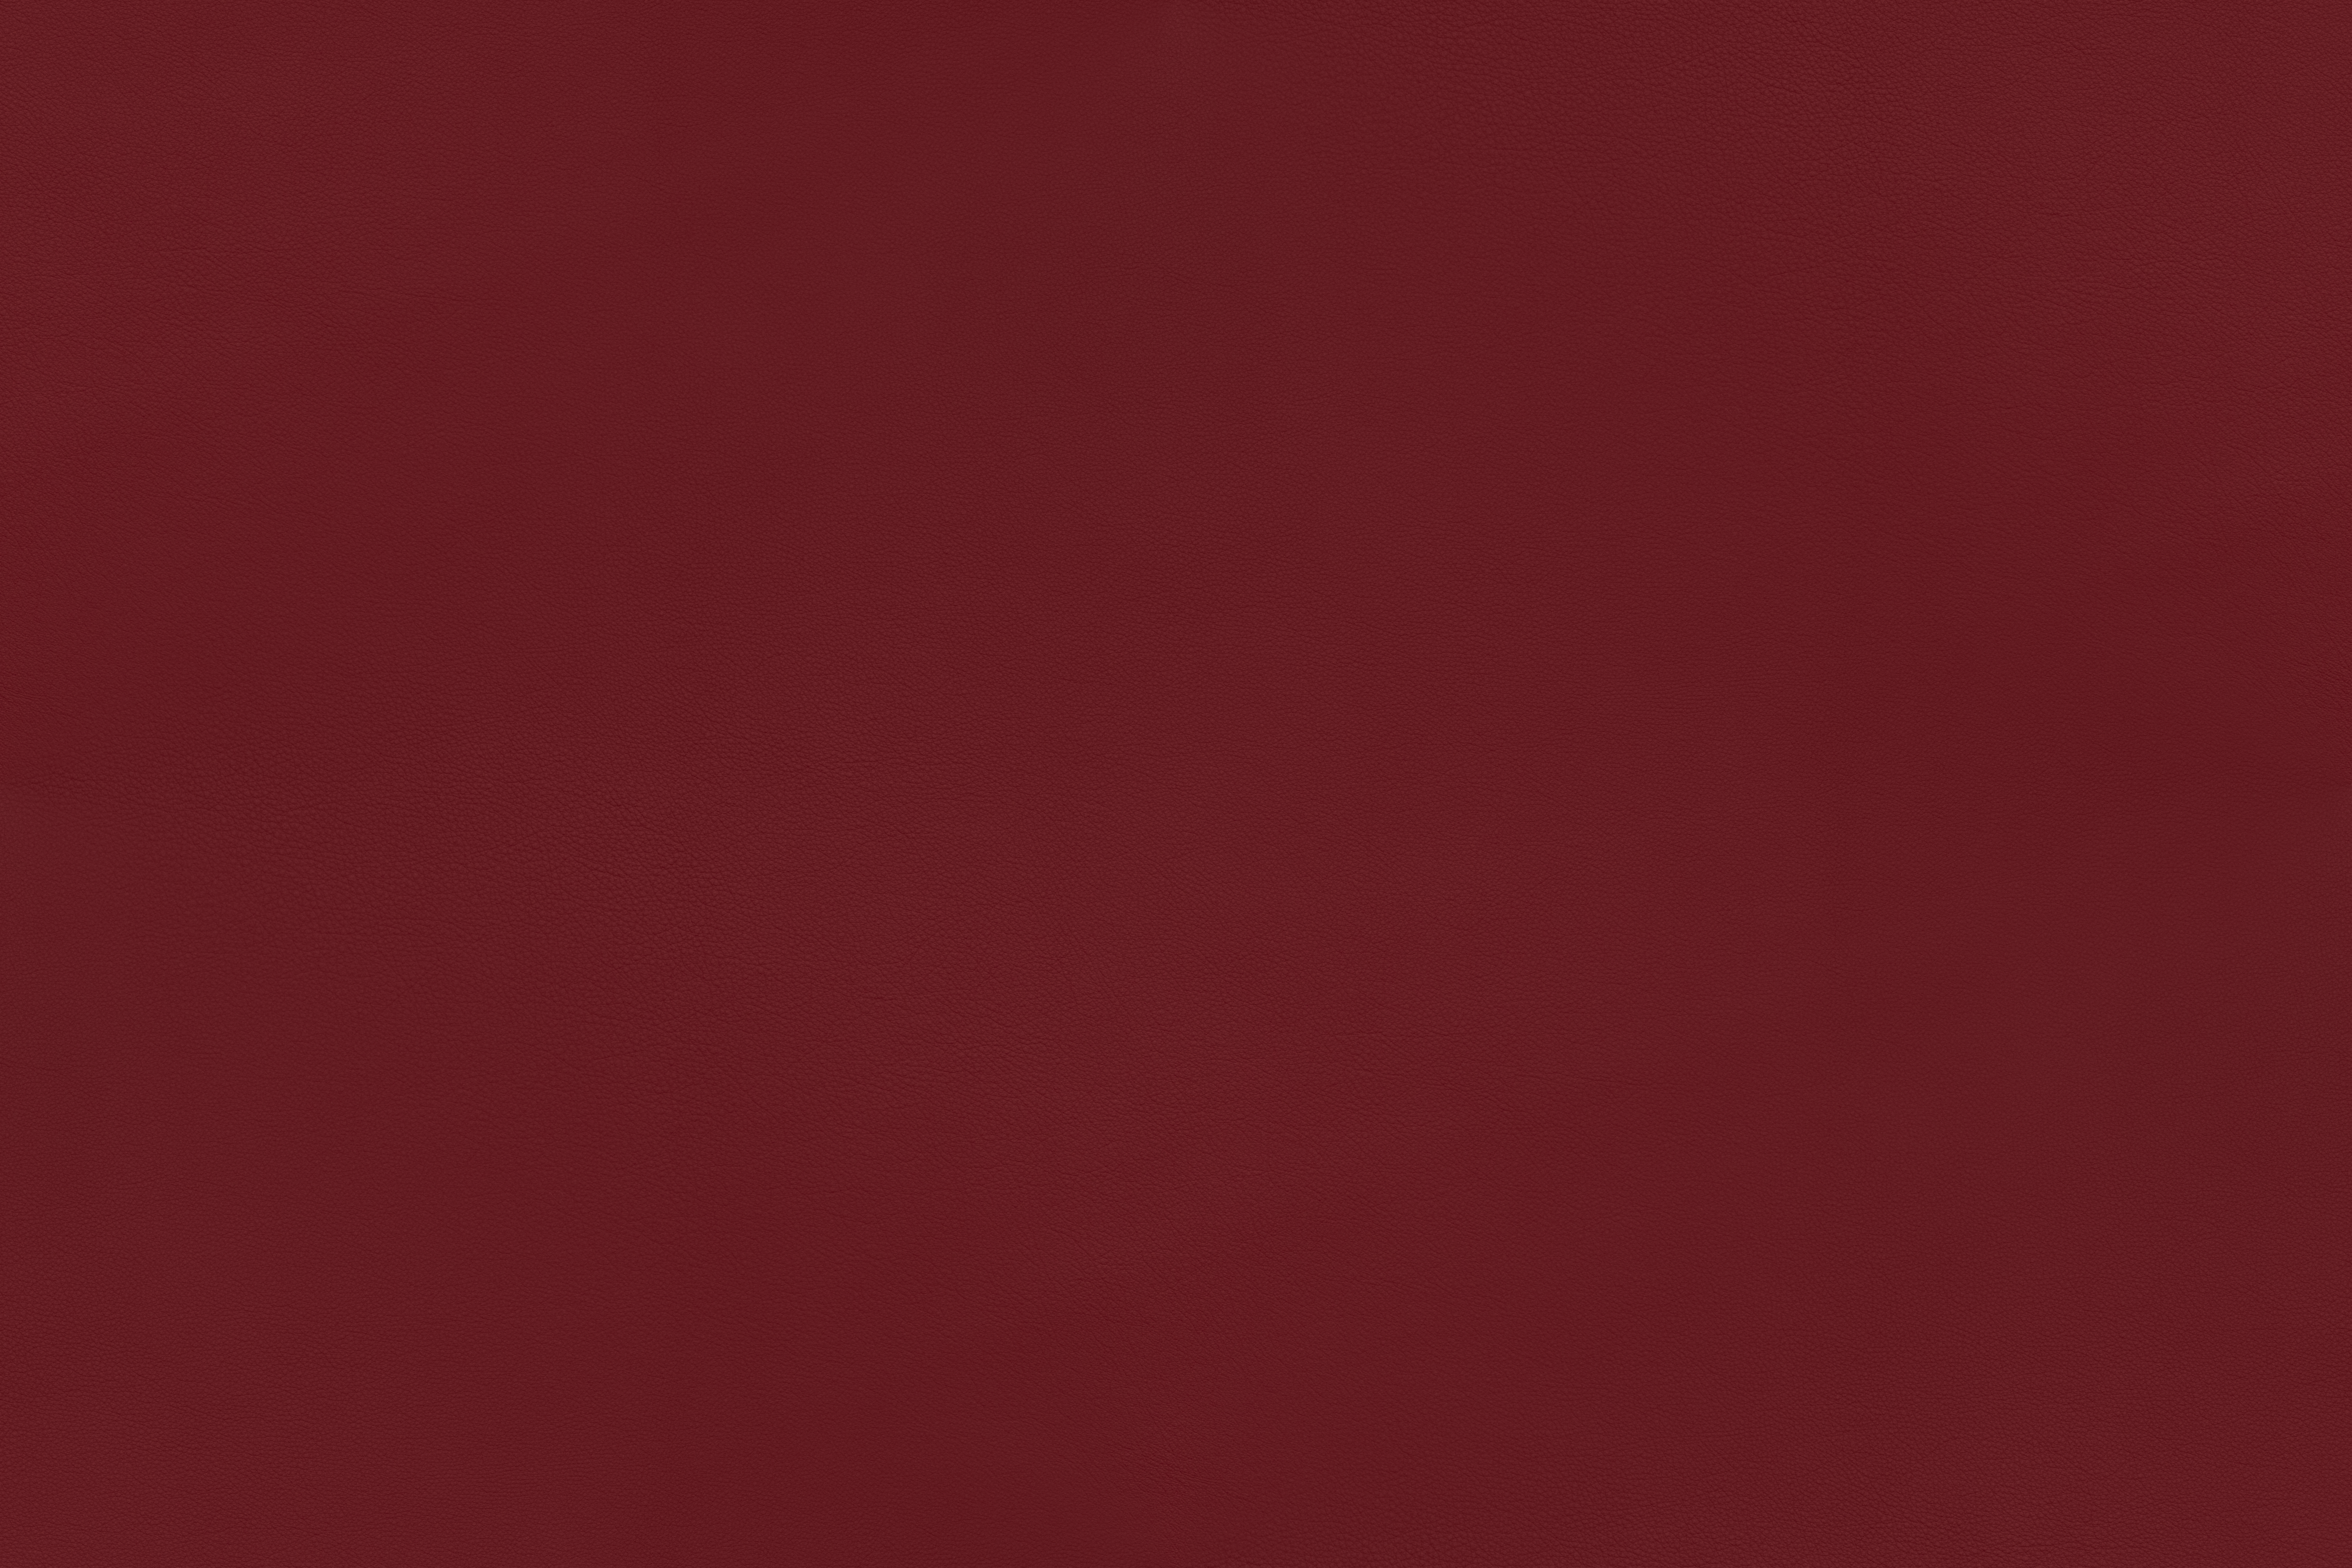 Sorensen Leather - Savanne-red-30310 by SorensenLeather on DeviantArt